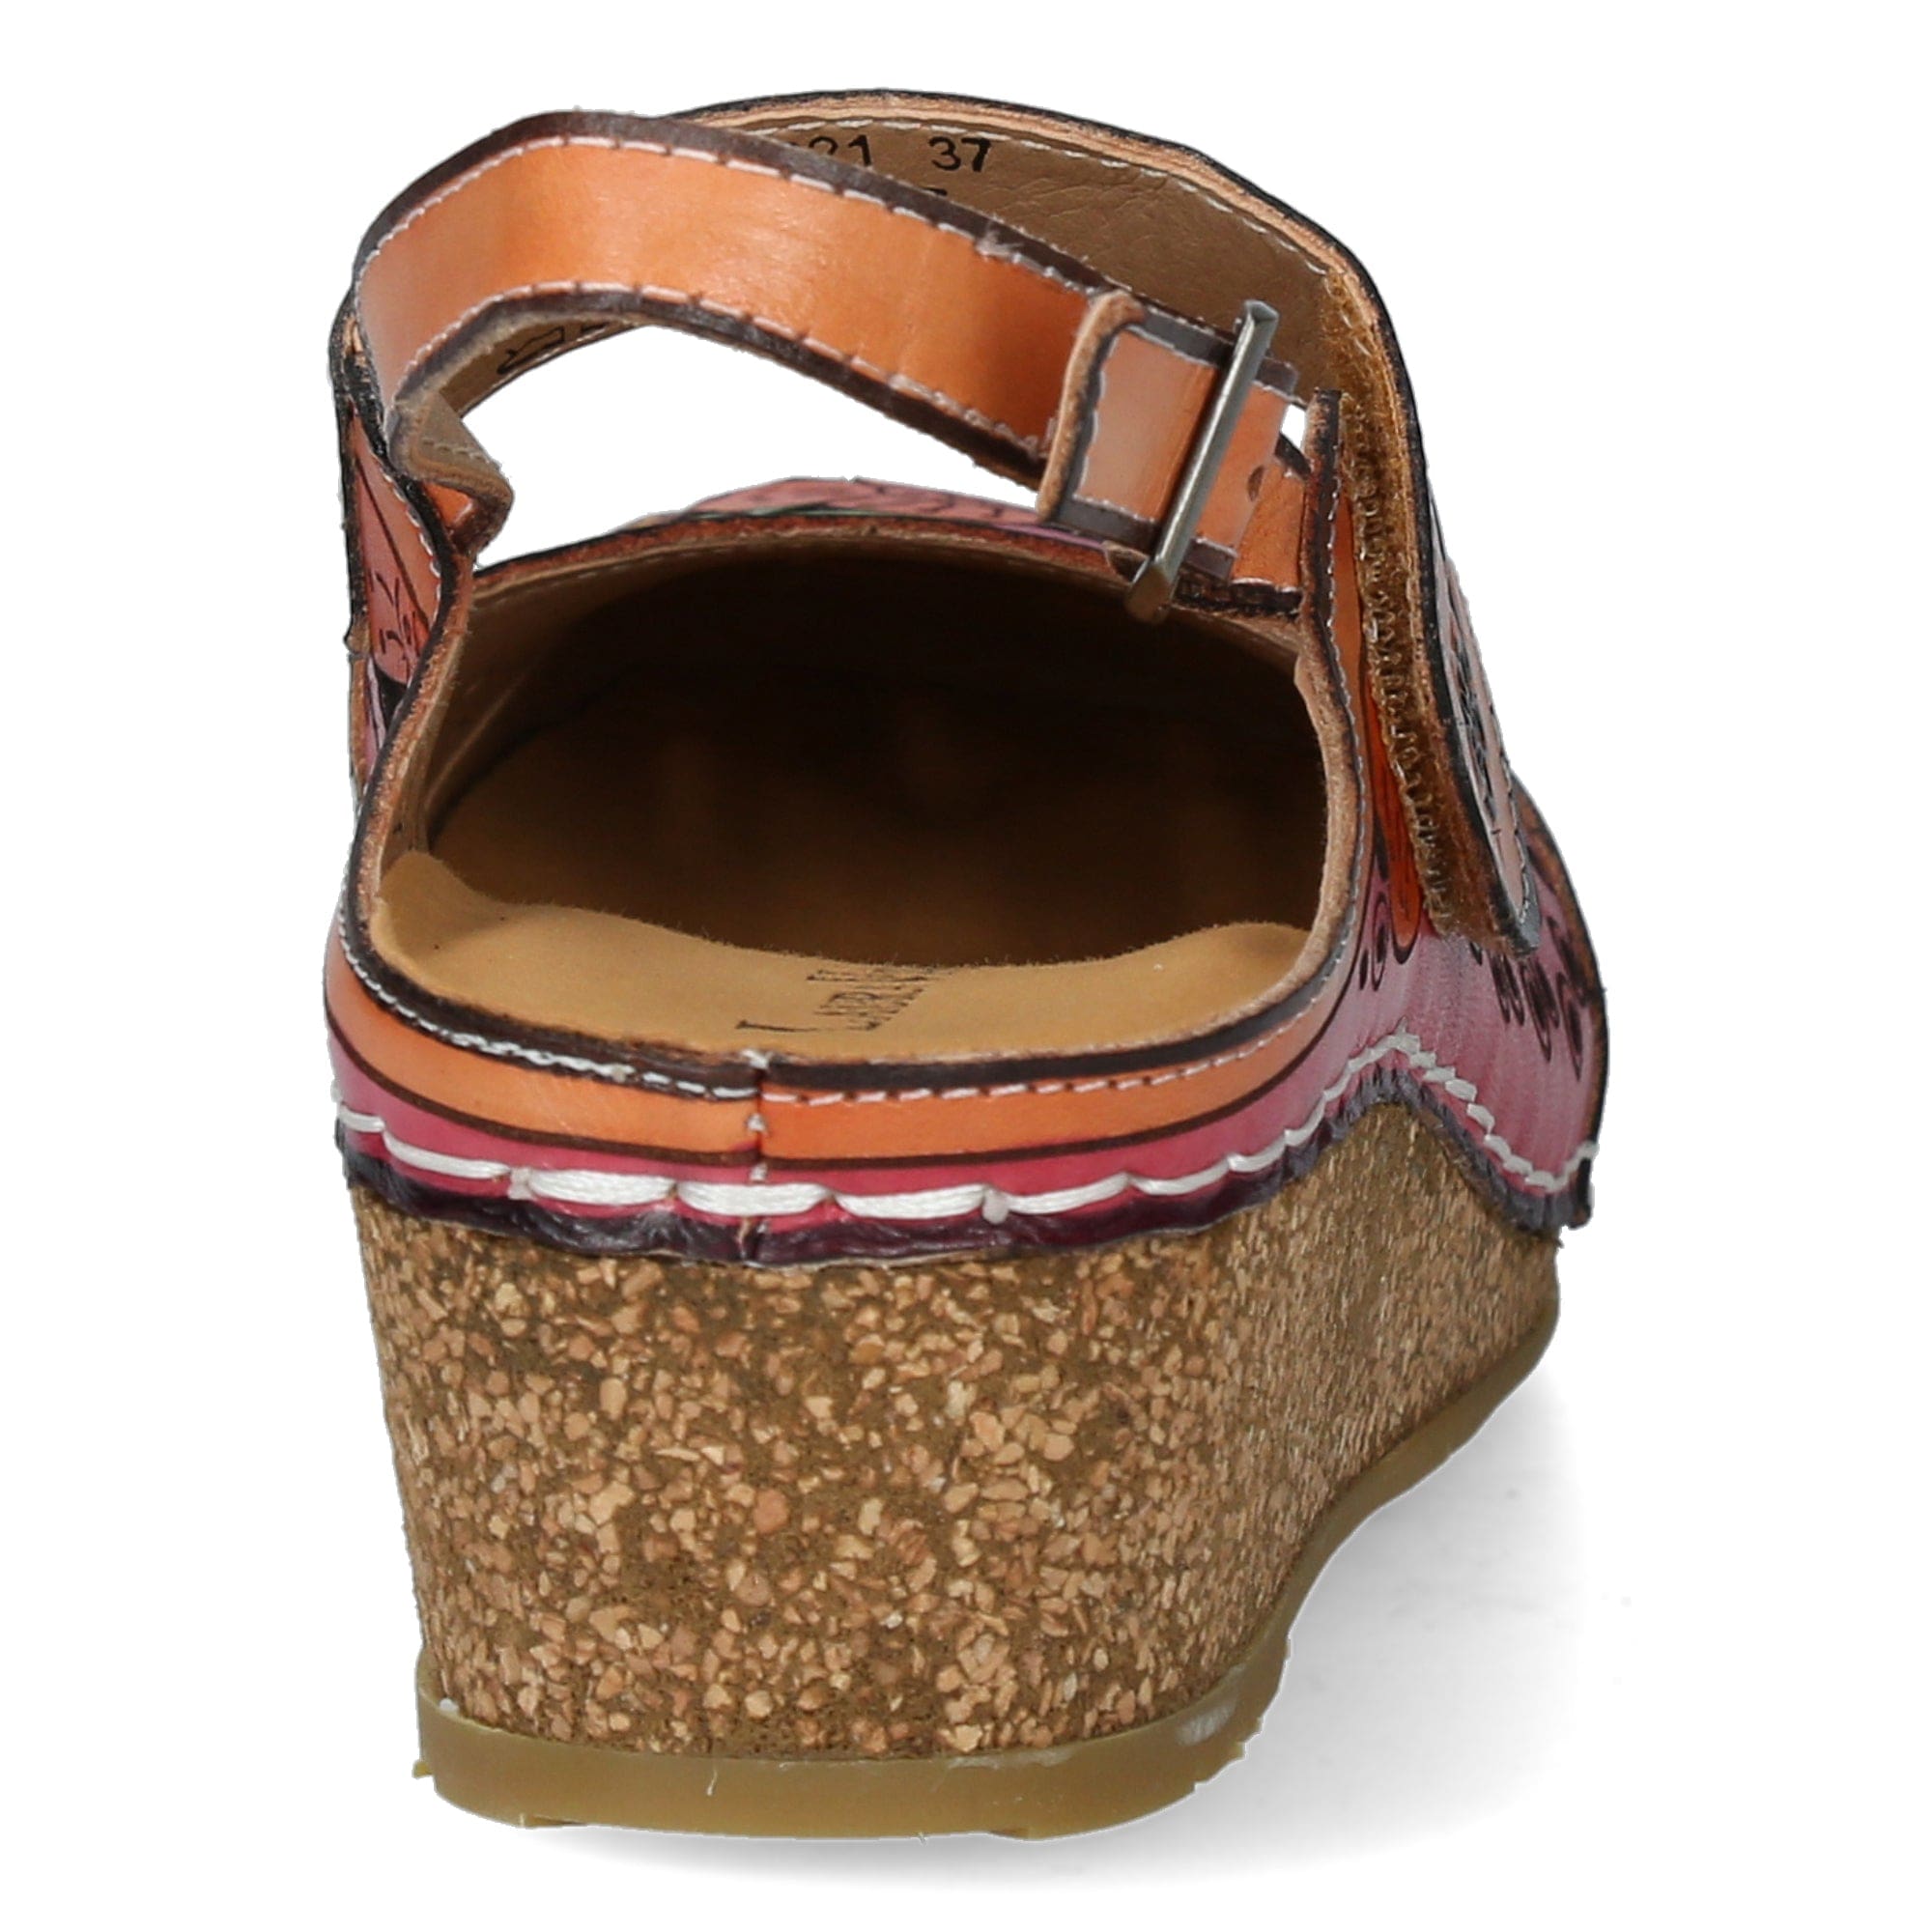 FACSCINEO 0321 Shoes - Sandal